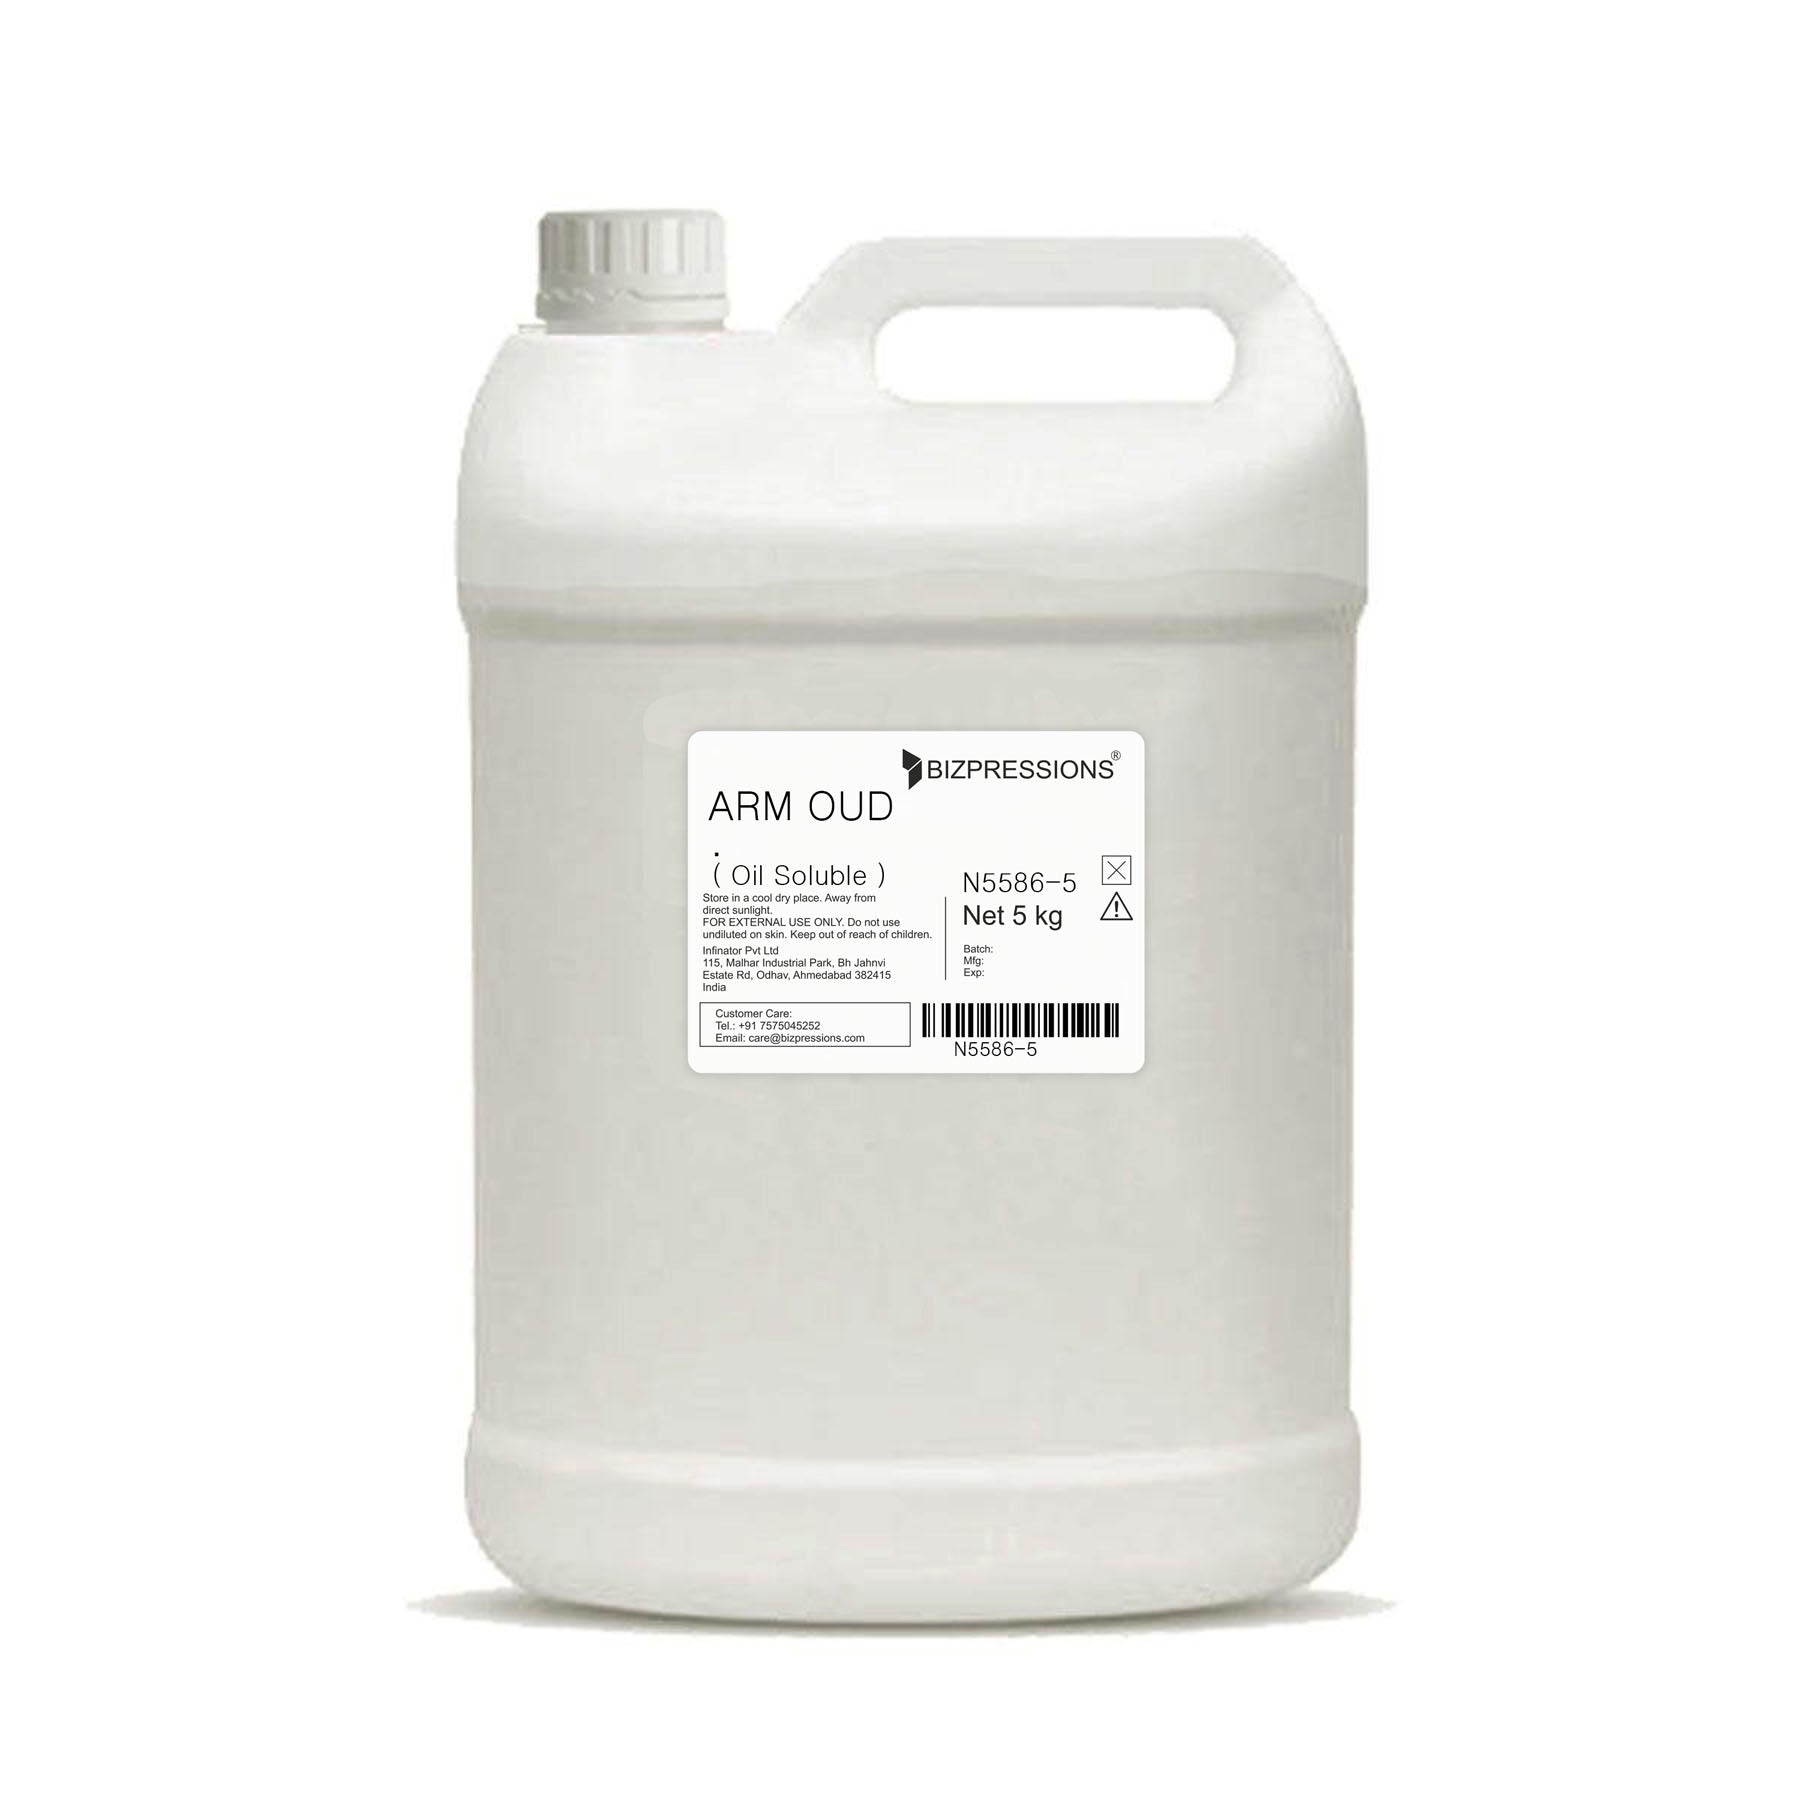 ARM OUD - Fragrance ( Oil Soluble ) - 5 kg